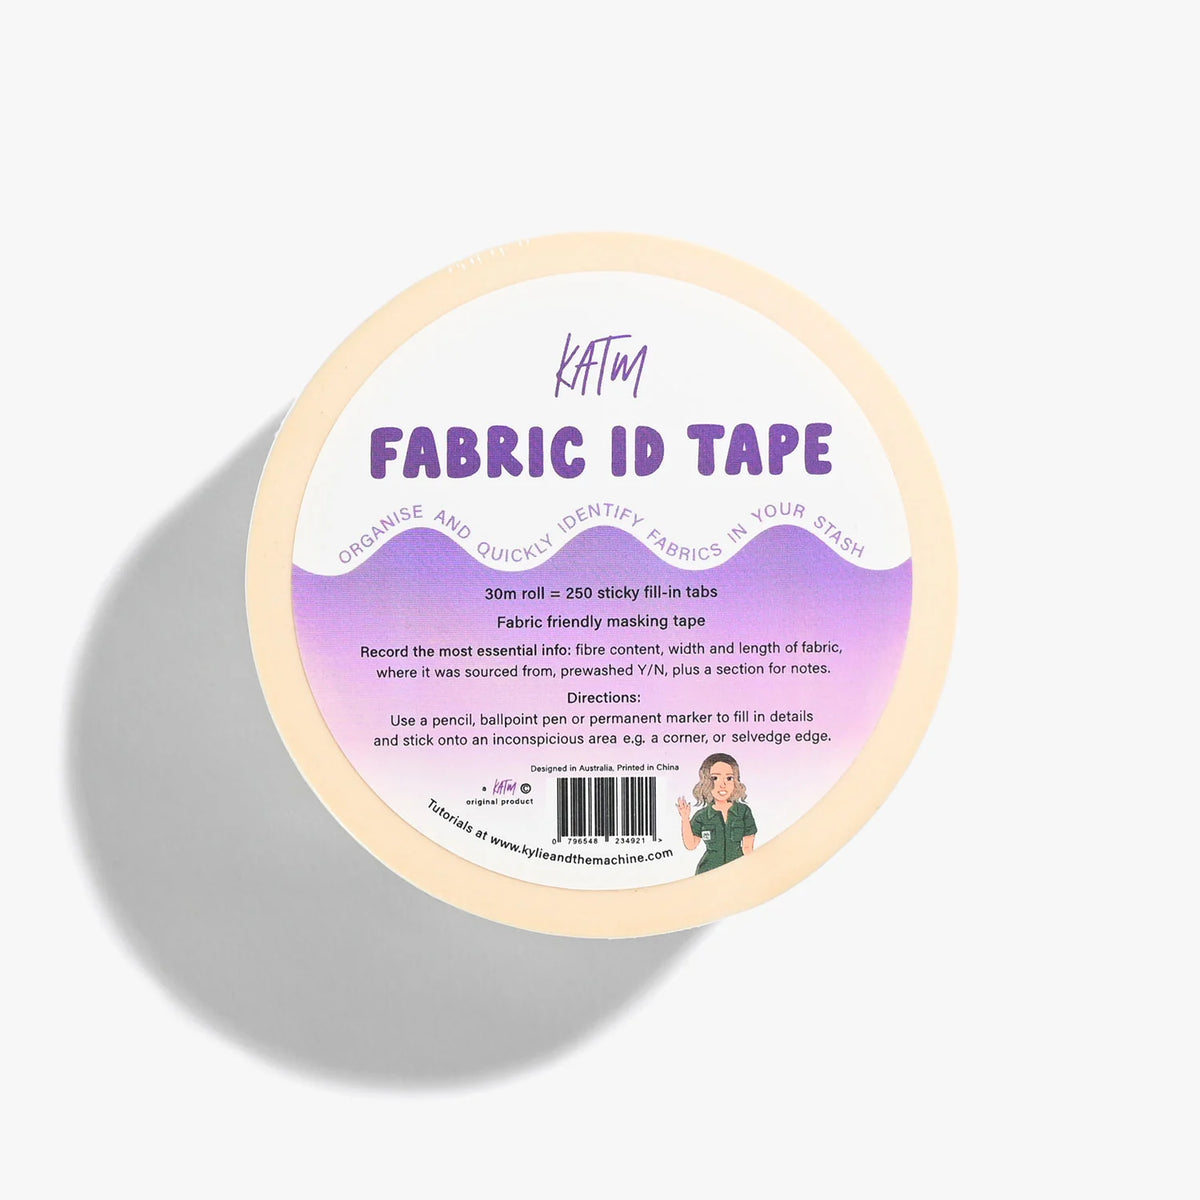 KATM Fabric ID Label Tape – 1 Tape Roll 30m